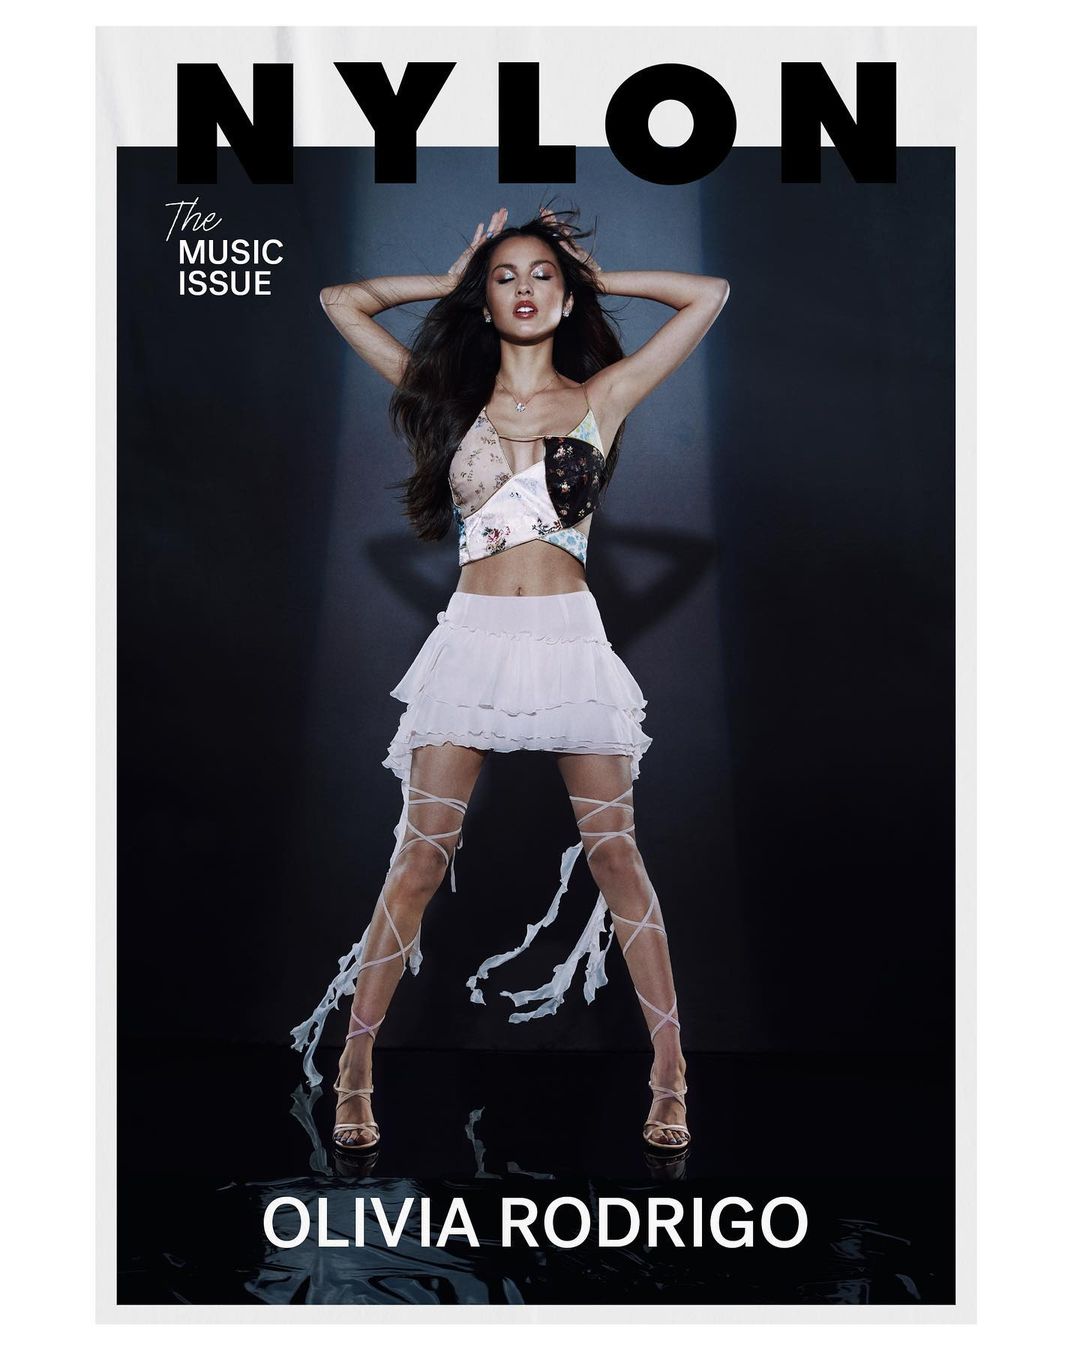 Olivia Rodrigo vestida como una estrella del pop de principios de los 2000 en la portada de NYLON